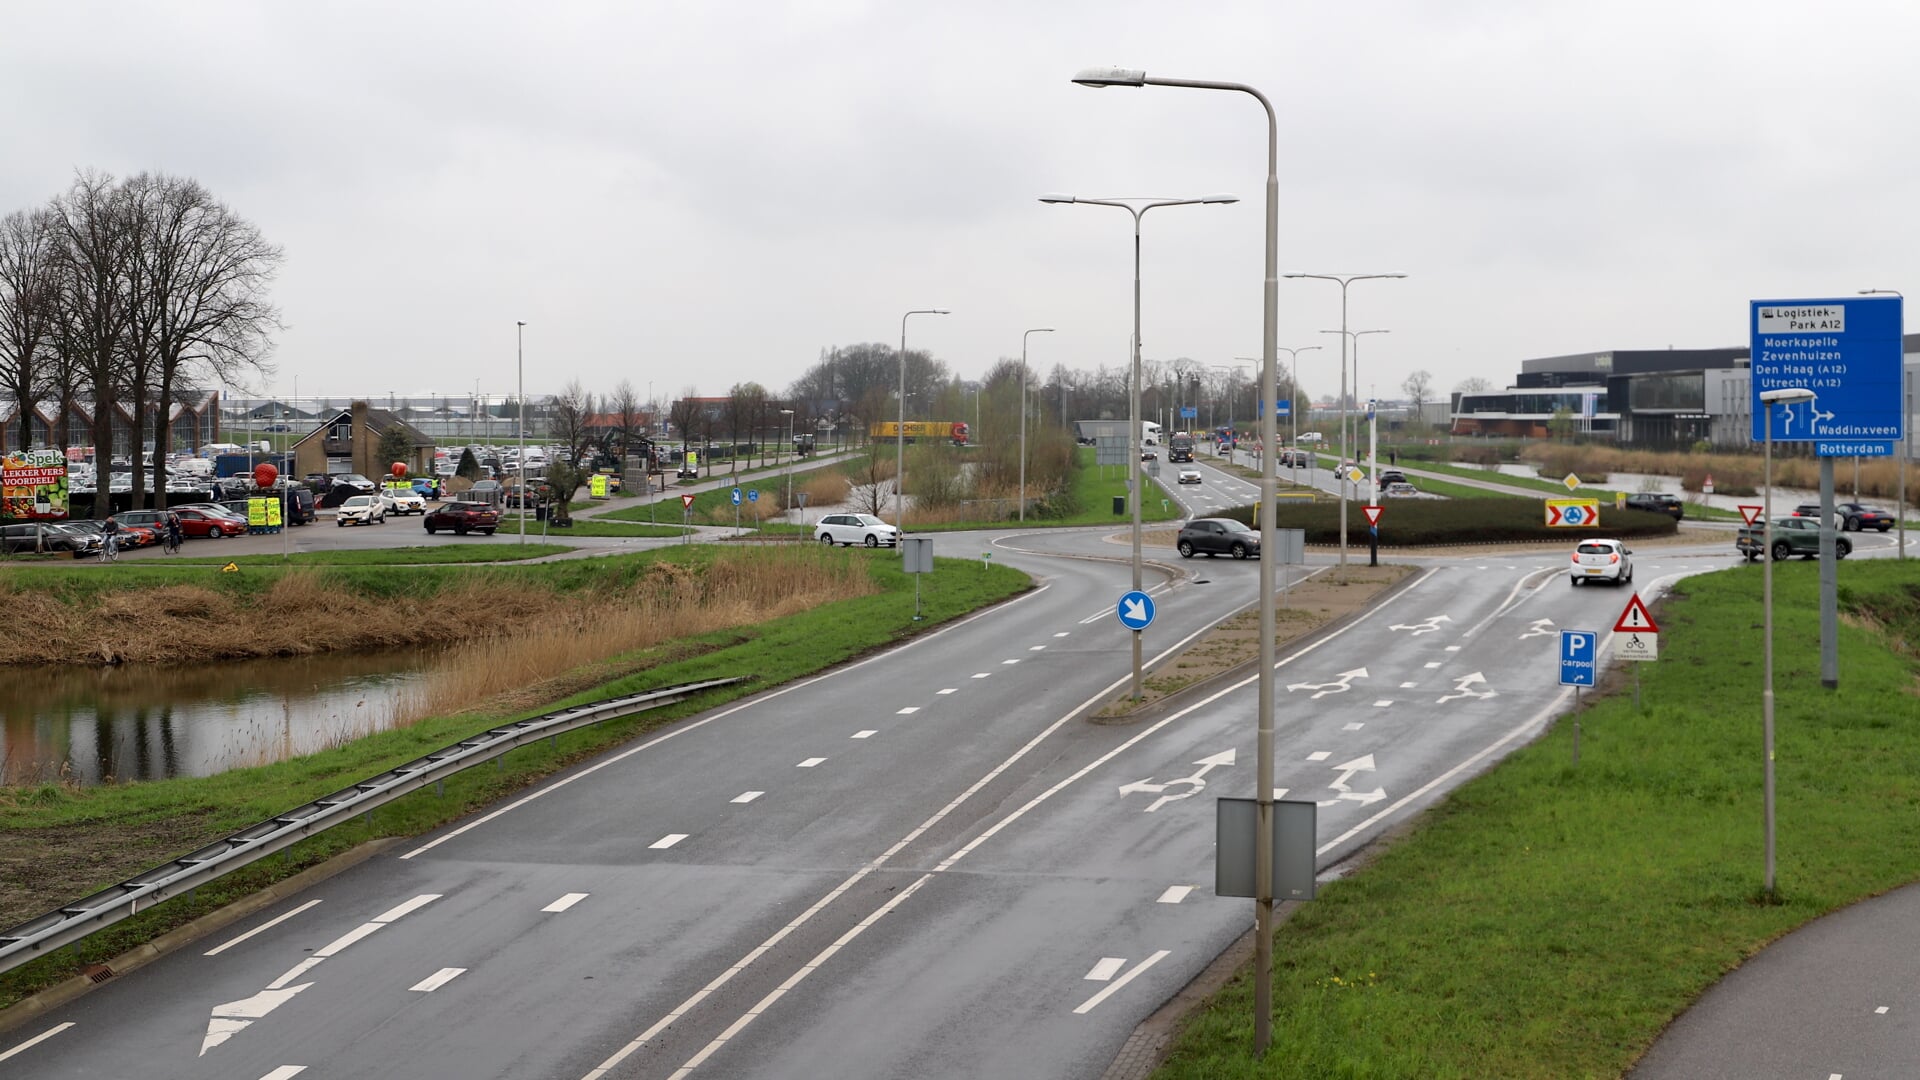 Door woningbouw wordt nog meer verkeer verwacht op de Bredeweg. (tekst en foto: Erik van Leeuwen)